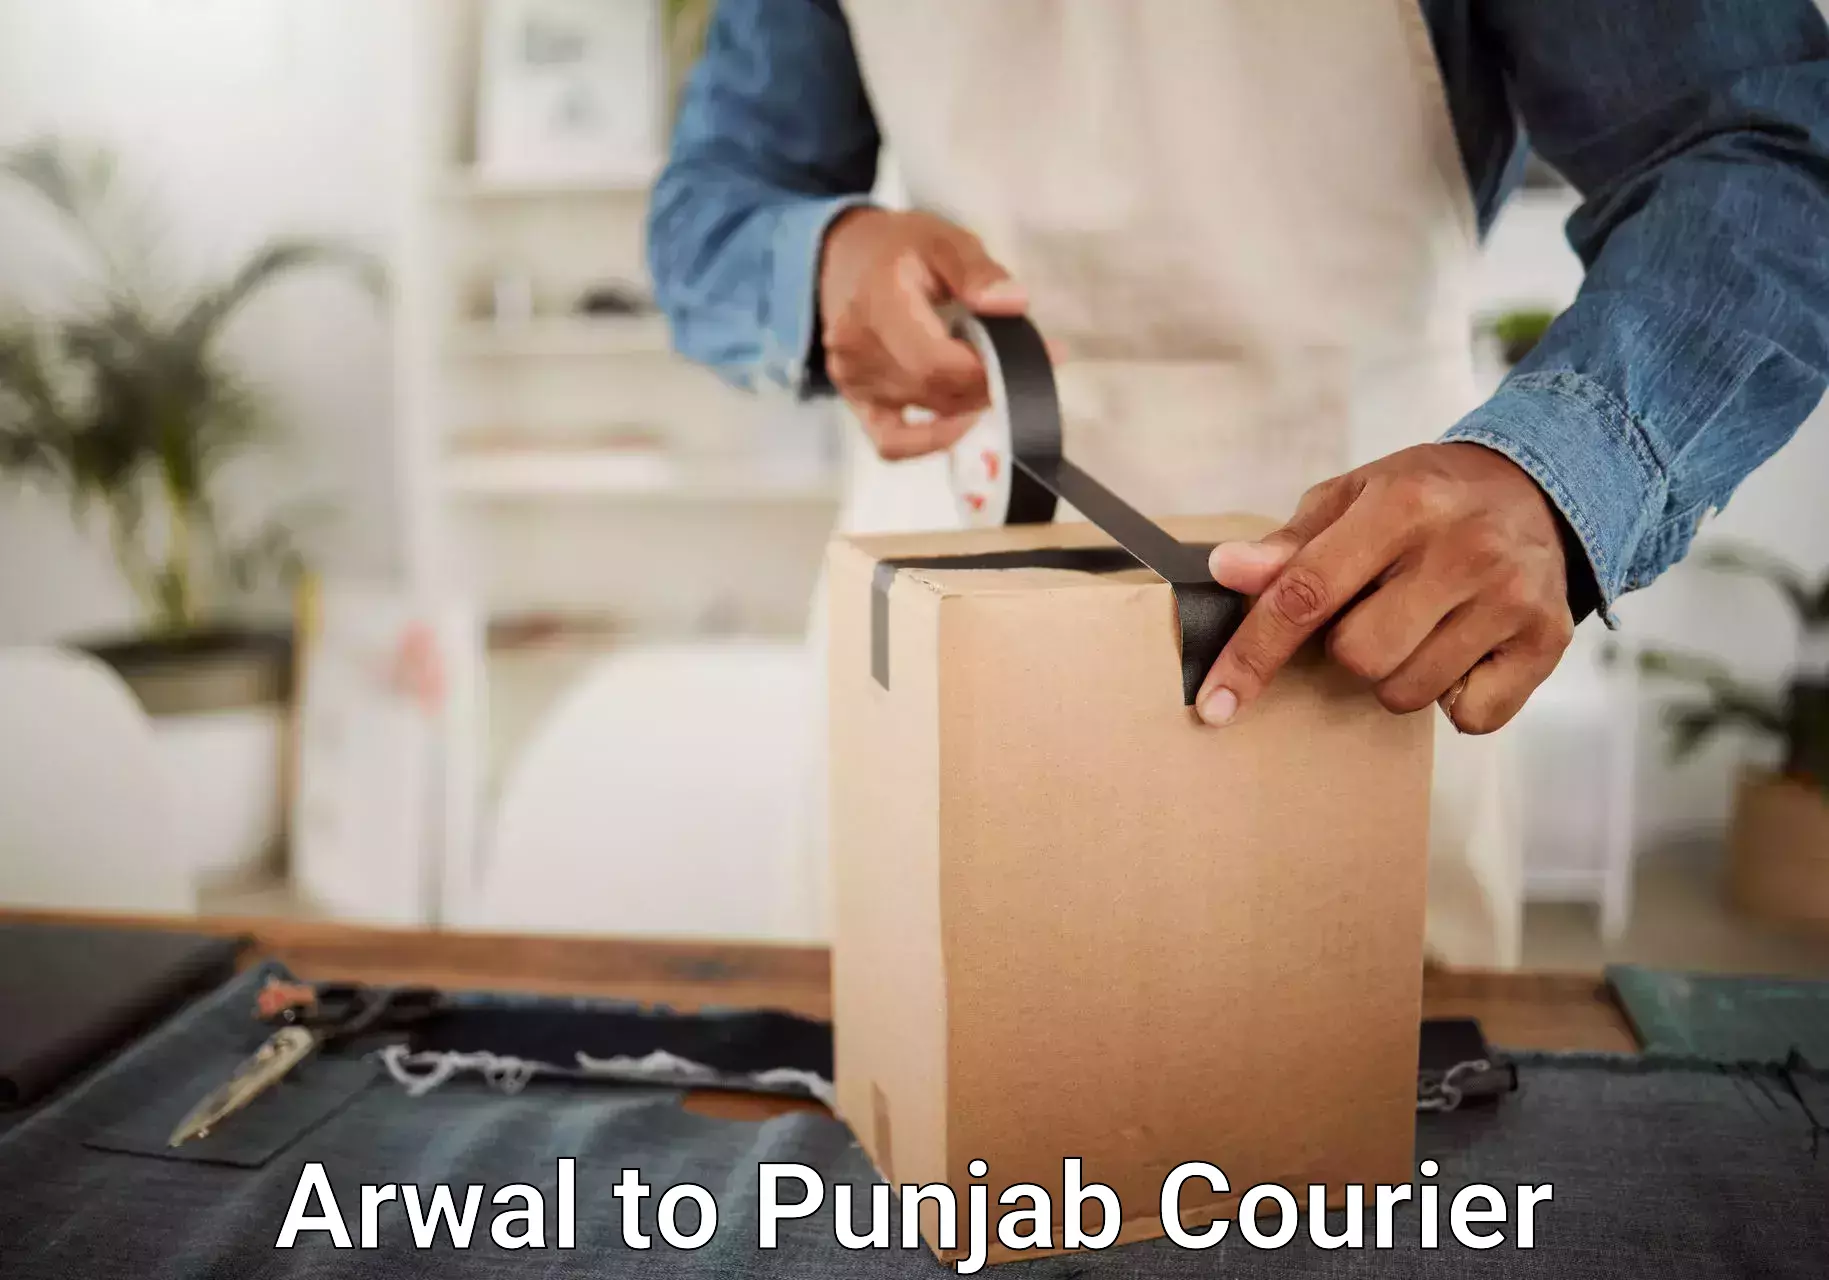 Luggage transfer service Arwal to Punjab